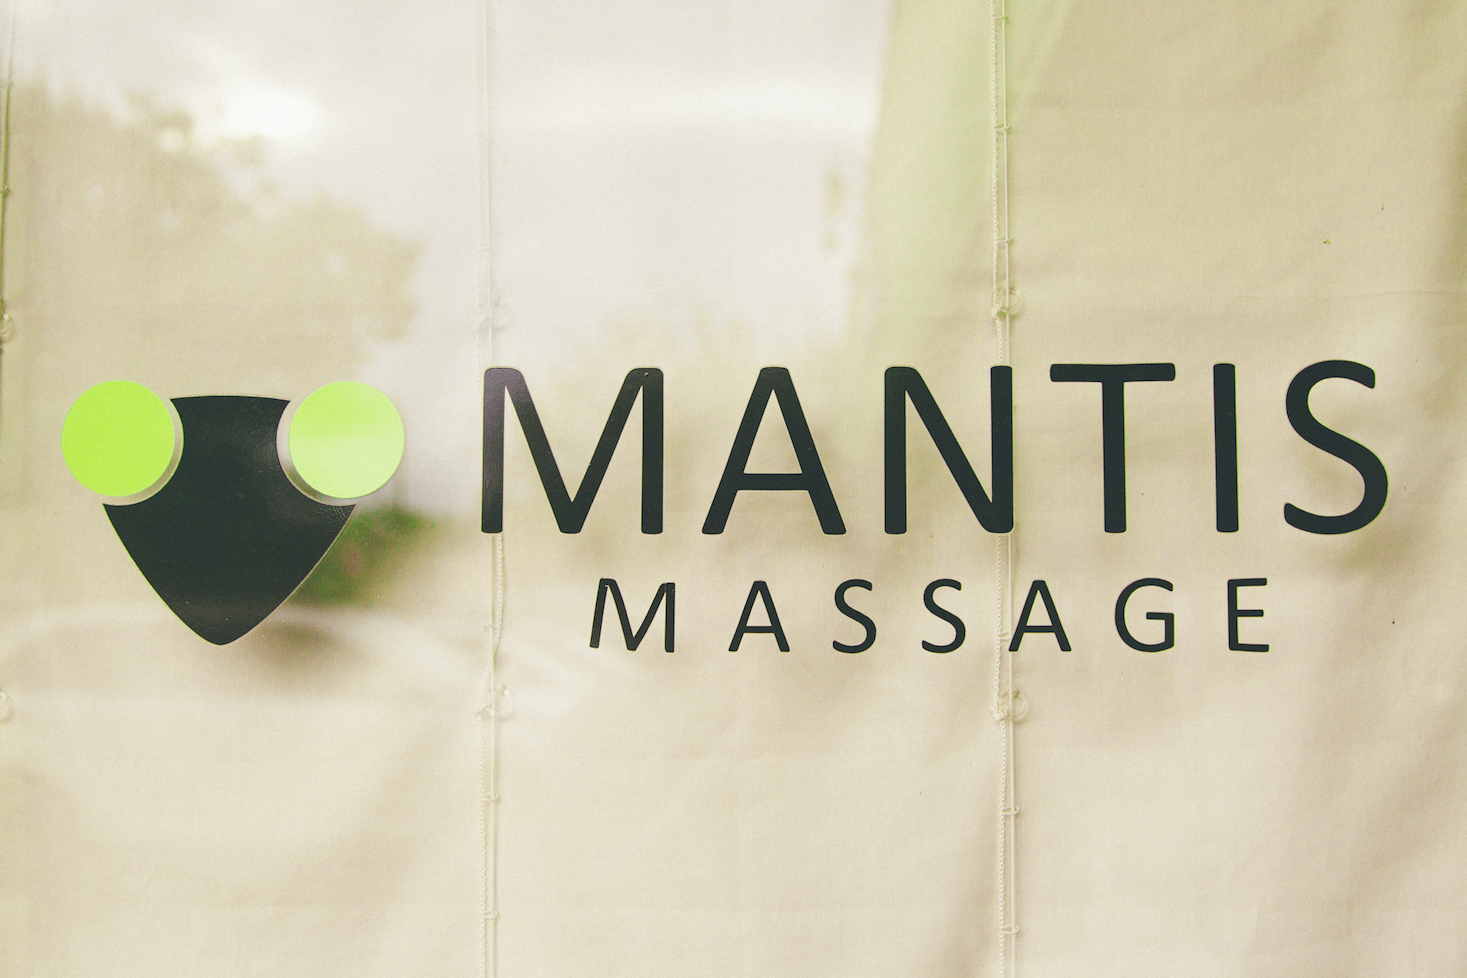  Mantis Massage, 3823 Airport Boulevard, Suite A, Austin, TX 78722 